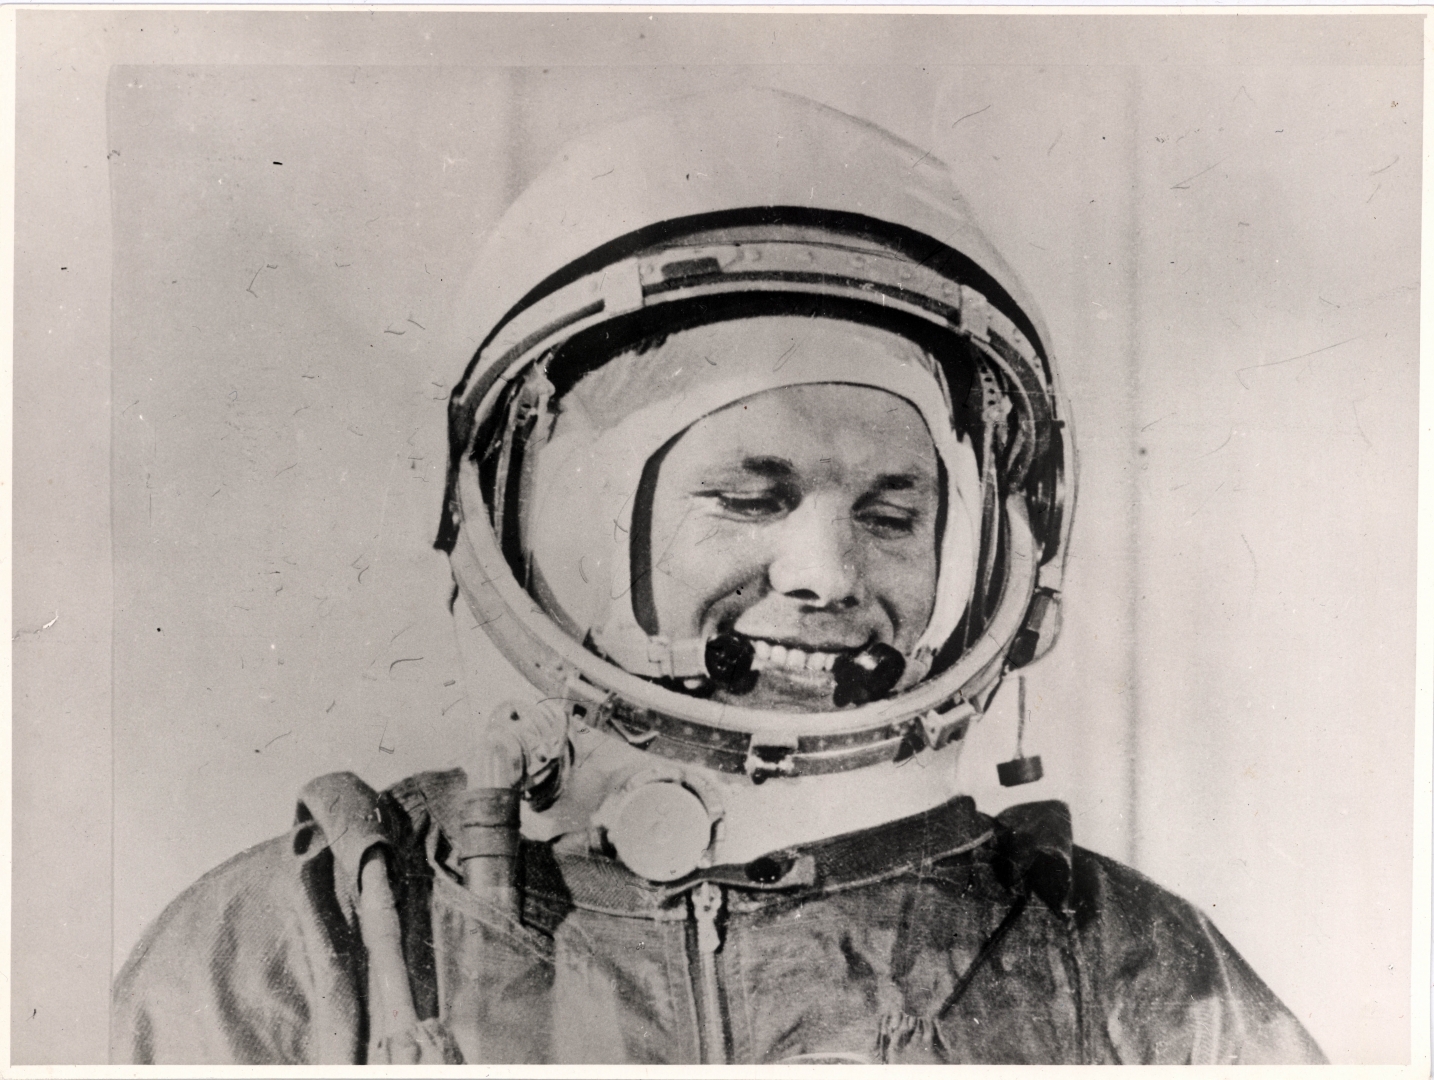 Панчин, Пинков и Ермаков вспомнили первый полет Гагарина в космос